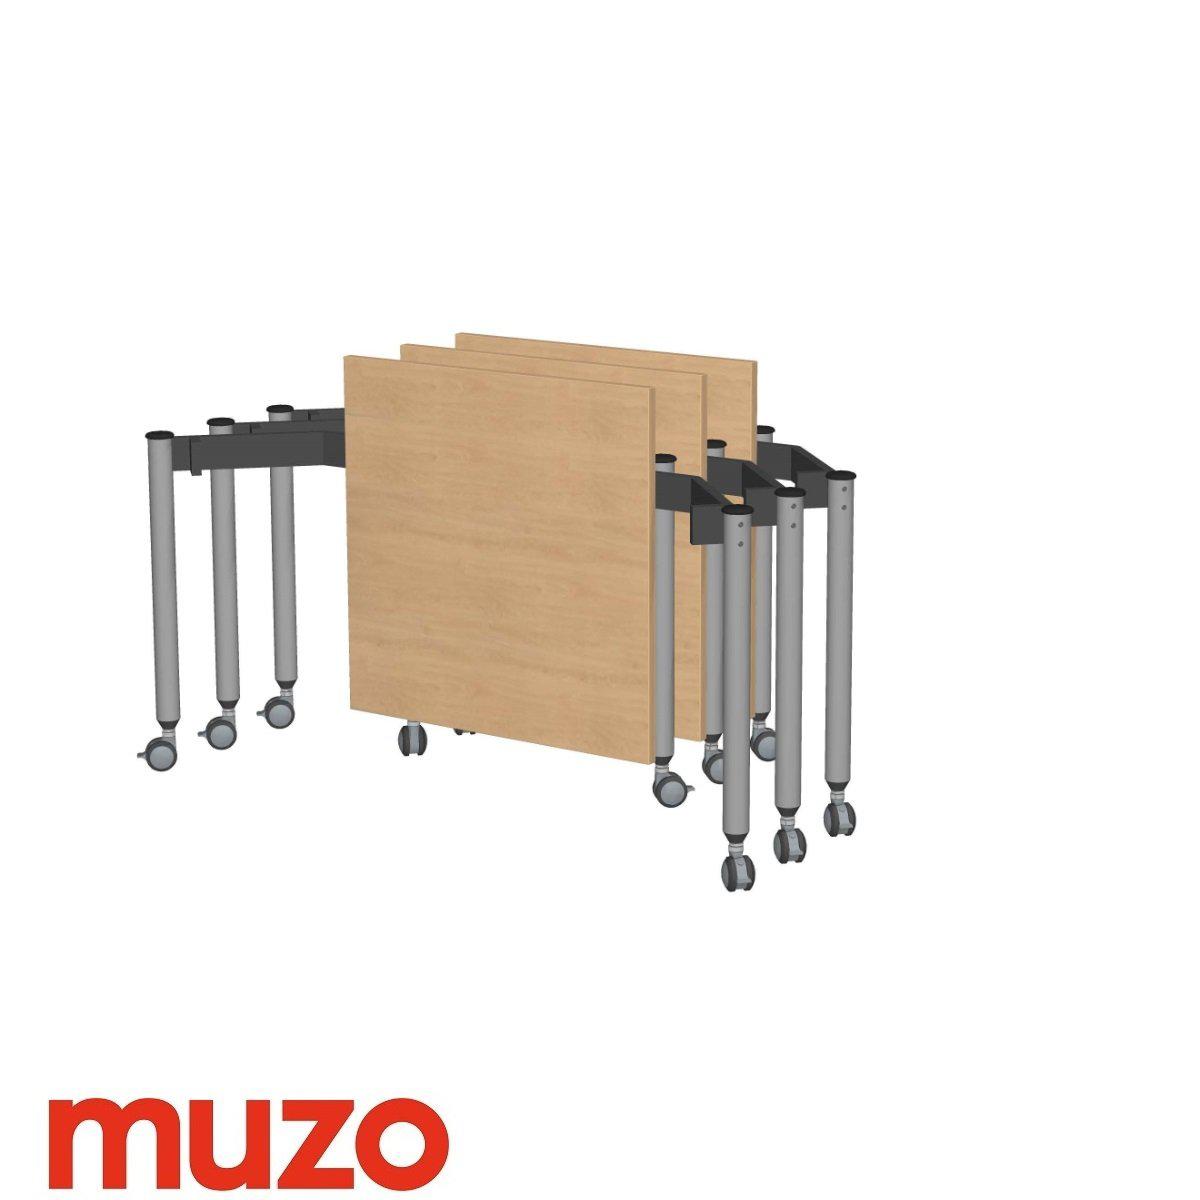 Muzo Kite® Mobile Flip-Top Folding/Nesting Table, Small Rectangle, 29.5" W x 25.5" D